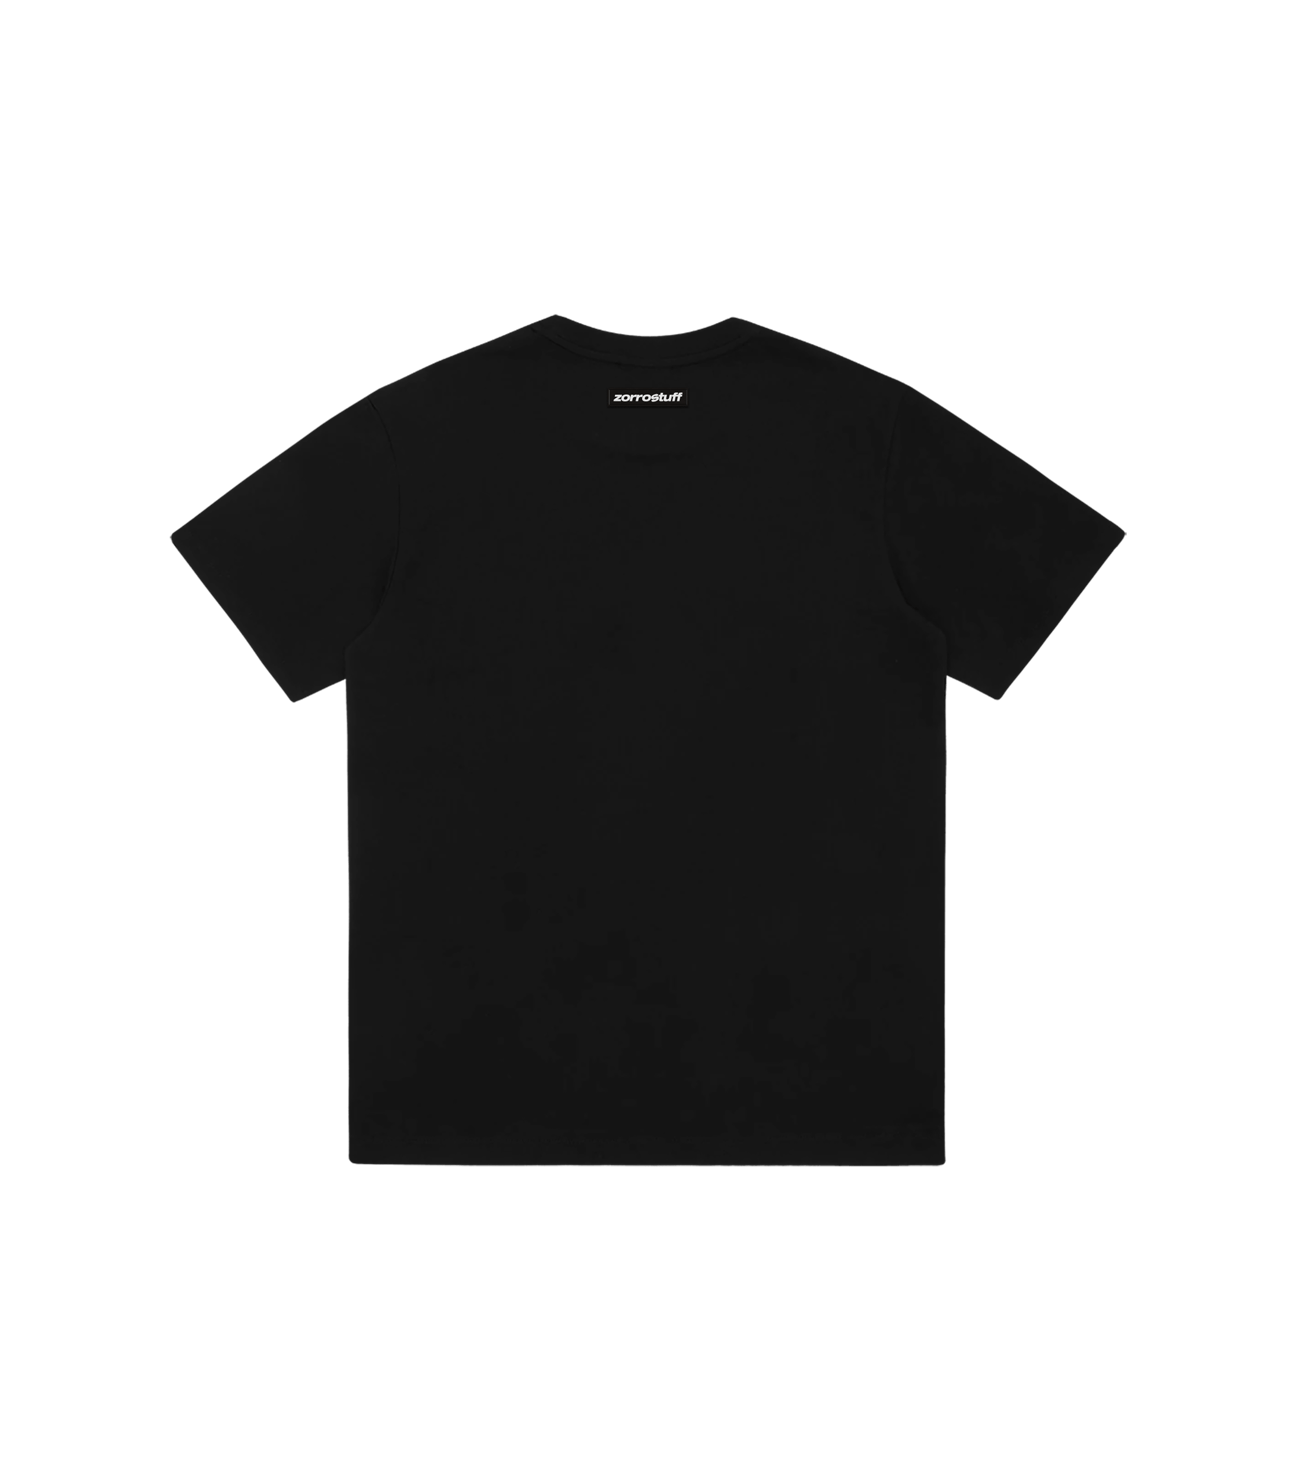 Zorro Stuff T-Shirts Your Everyday Tee Black